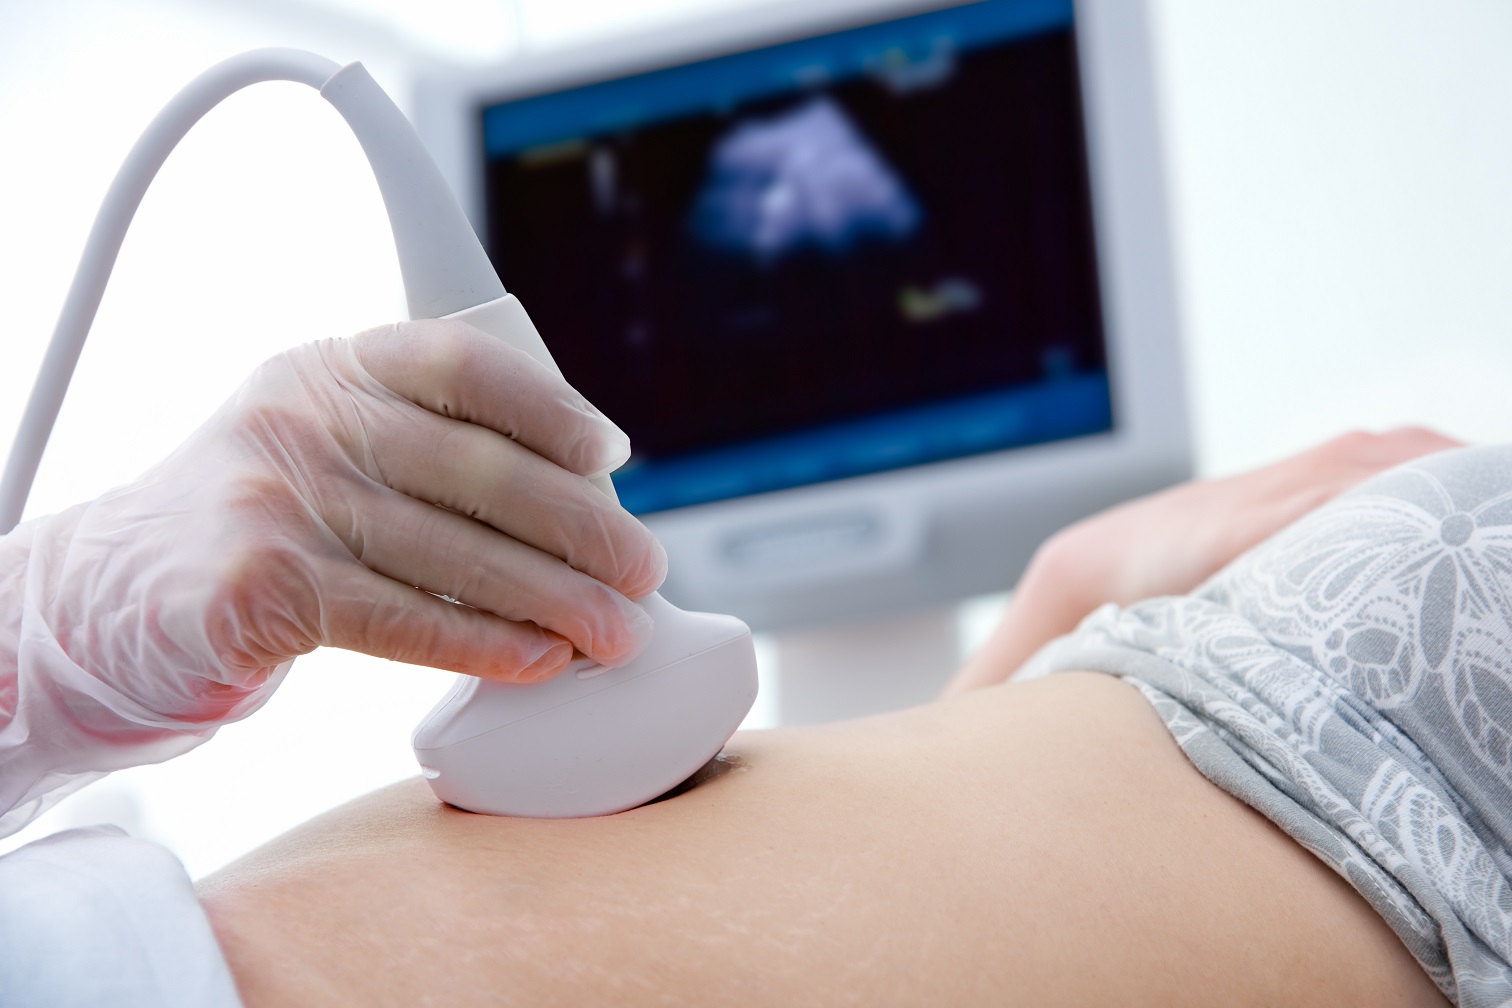 Ab der 4. SSW kann mit dem Ultraschall eine Schwangerschaft bestätigt werden